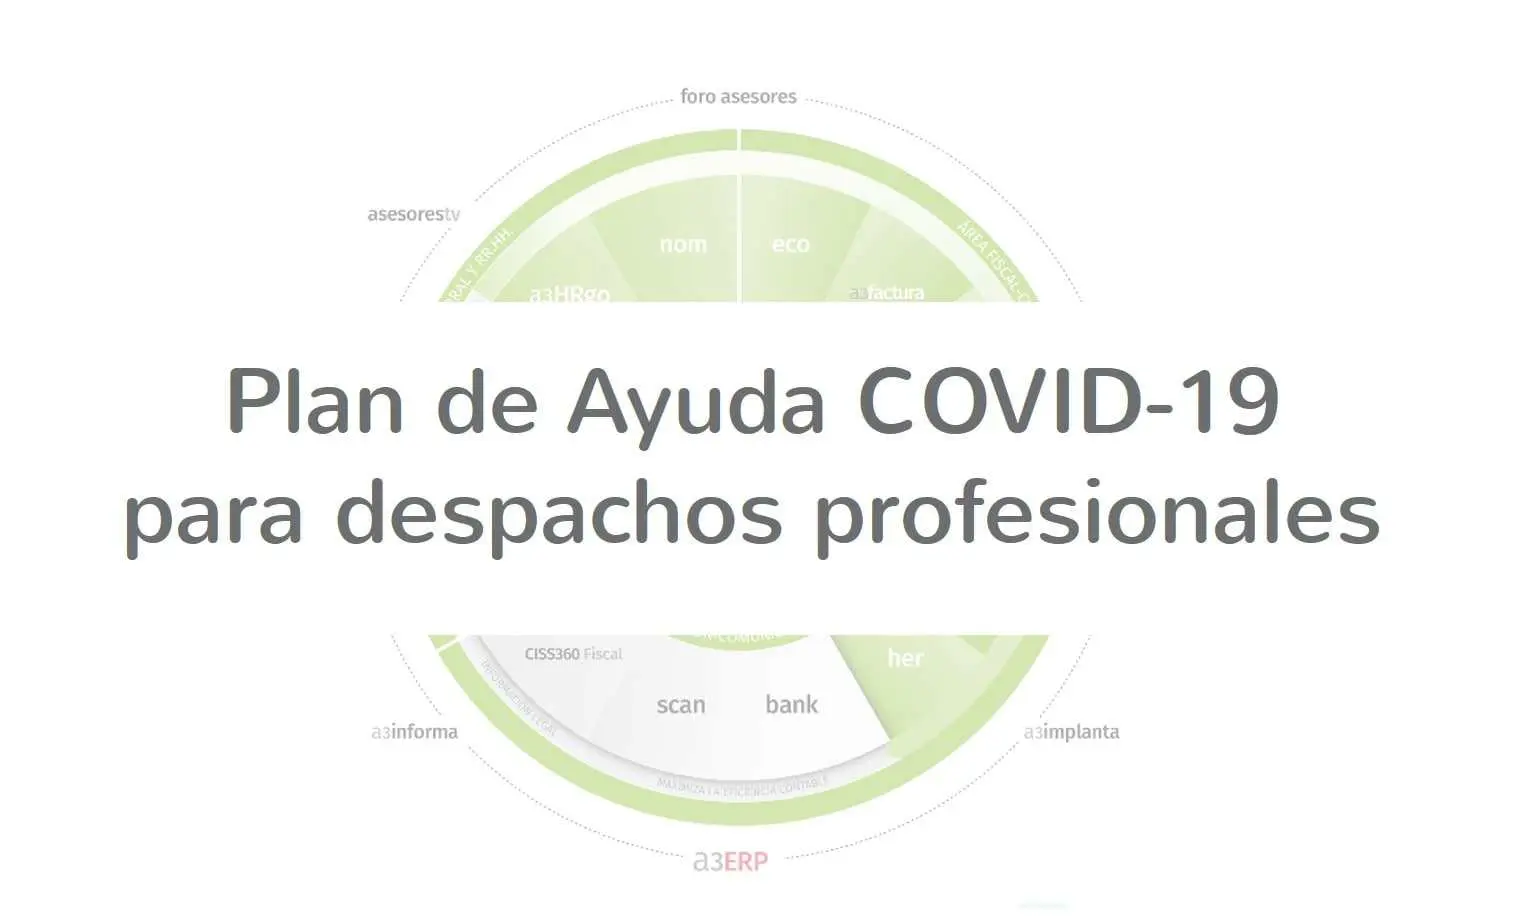 Plan de Ayuda COVID-19 para despachos profesionales